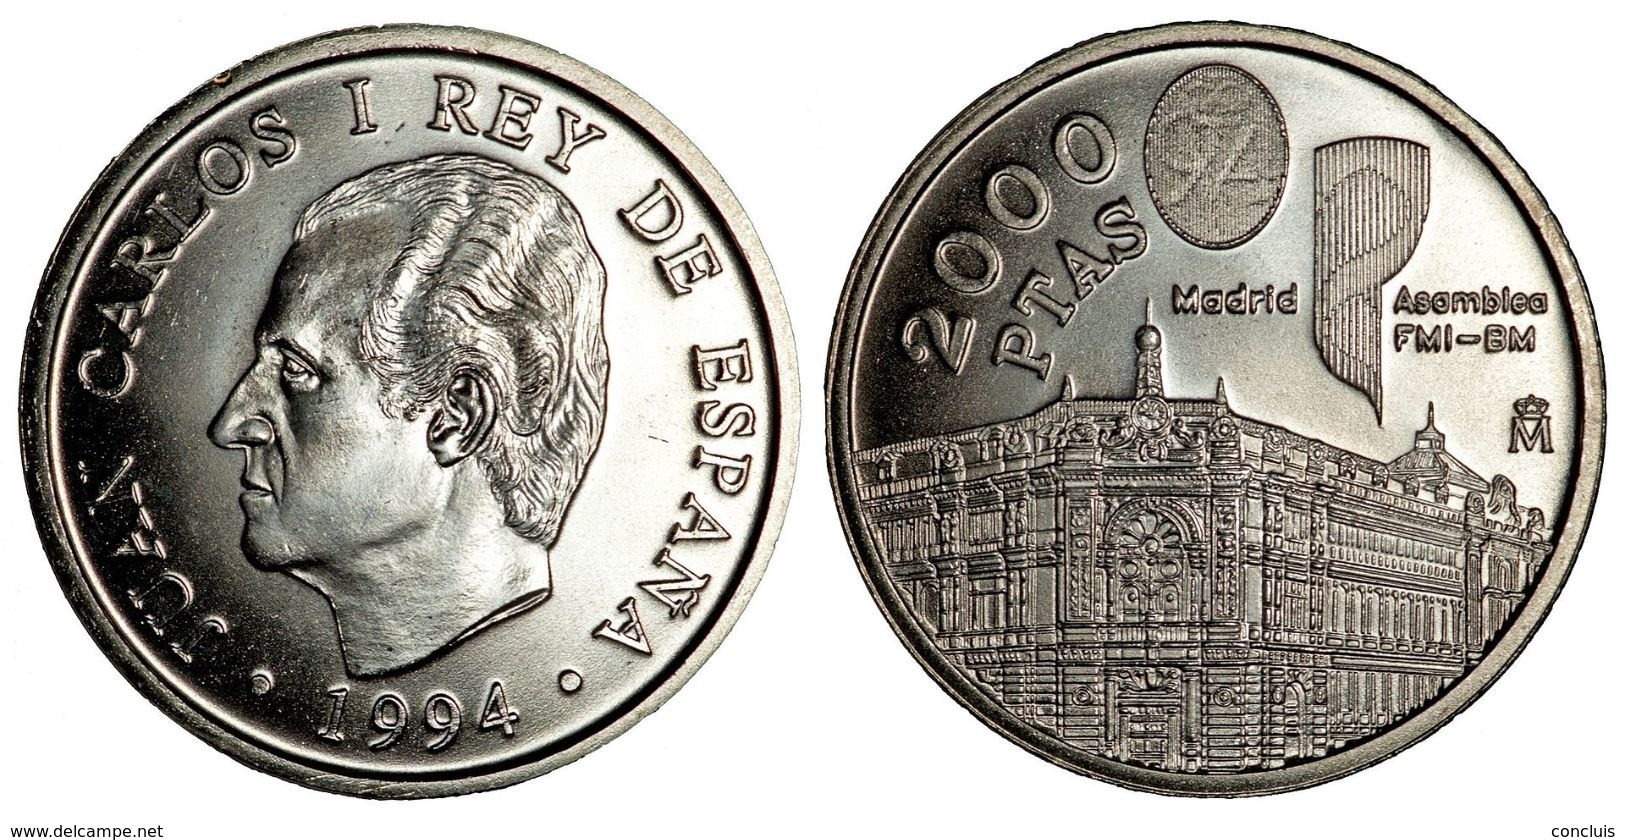 gesto Calor equipaje 2 000 pesetas - España 1994. Moneda 2000 pesetas plata. Asamblea FMI-8M.  Banco de España